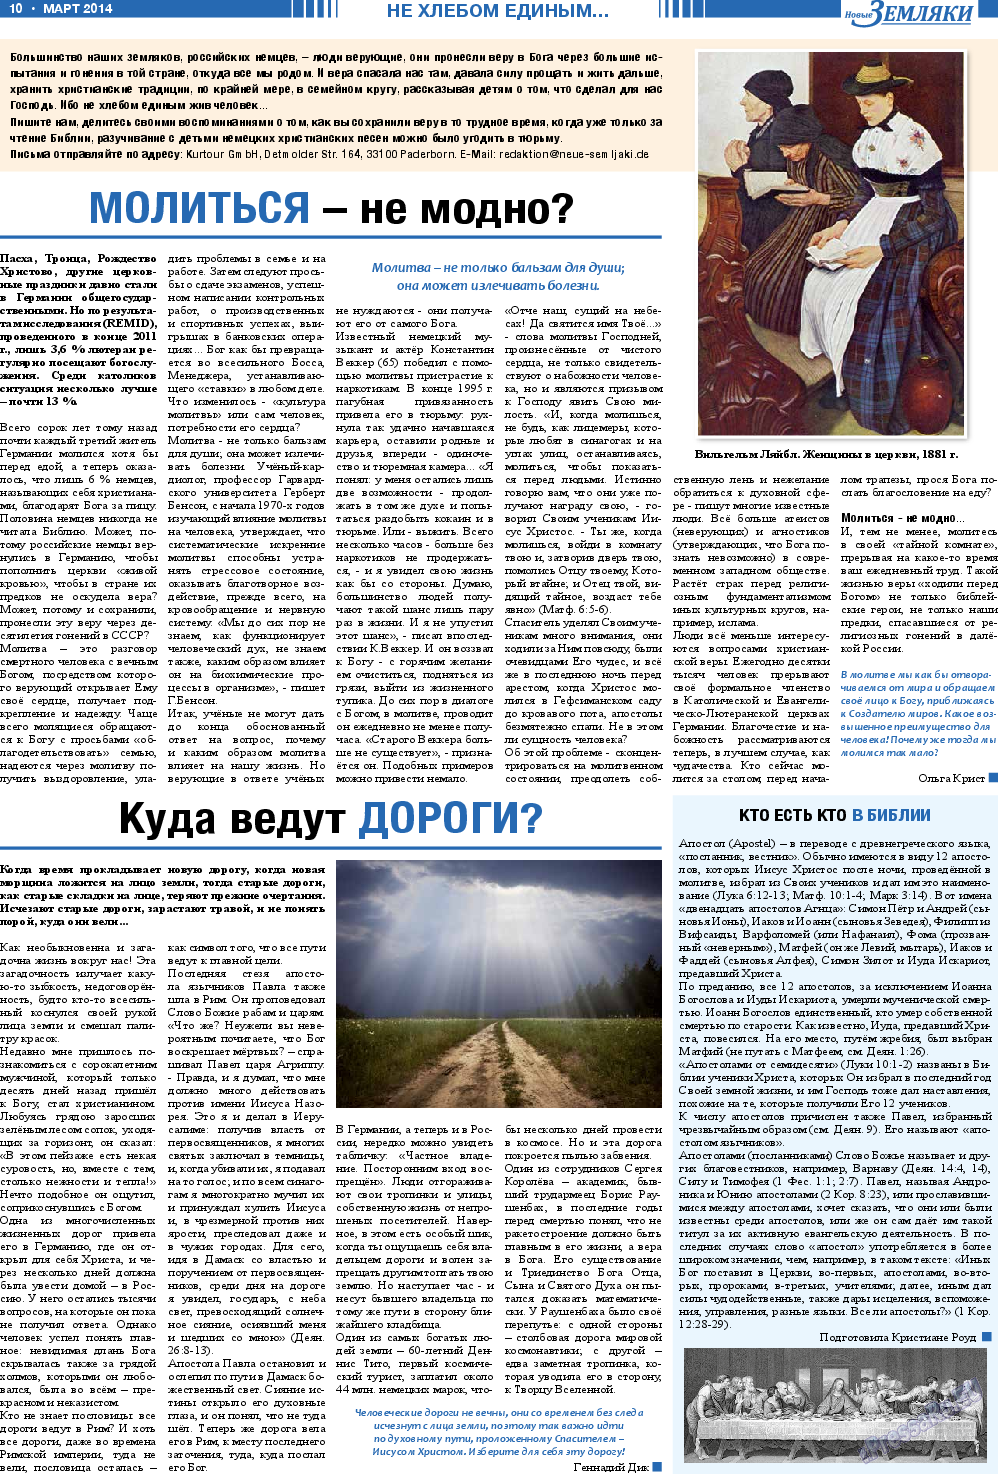 Новые Земляки, газета. 2014 №3 стр.10